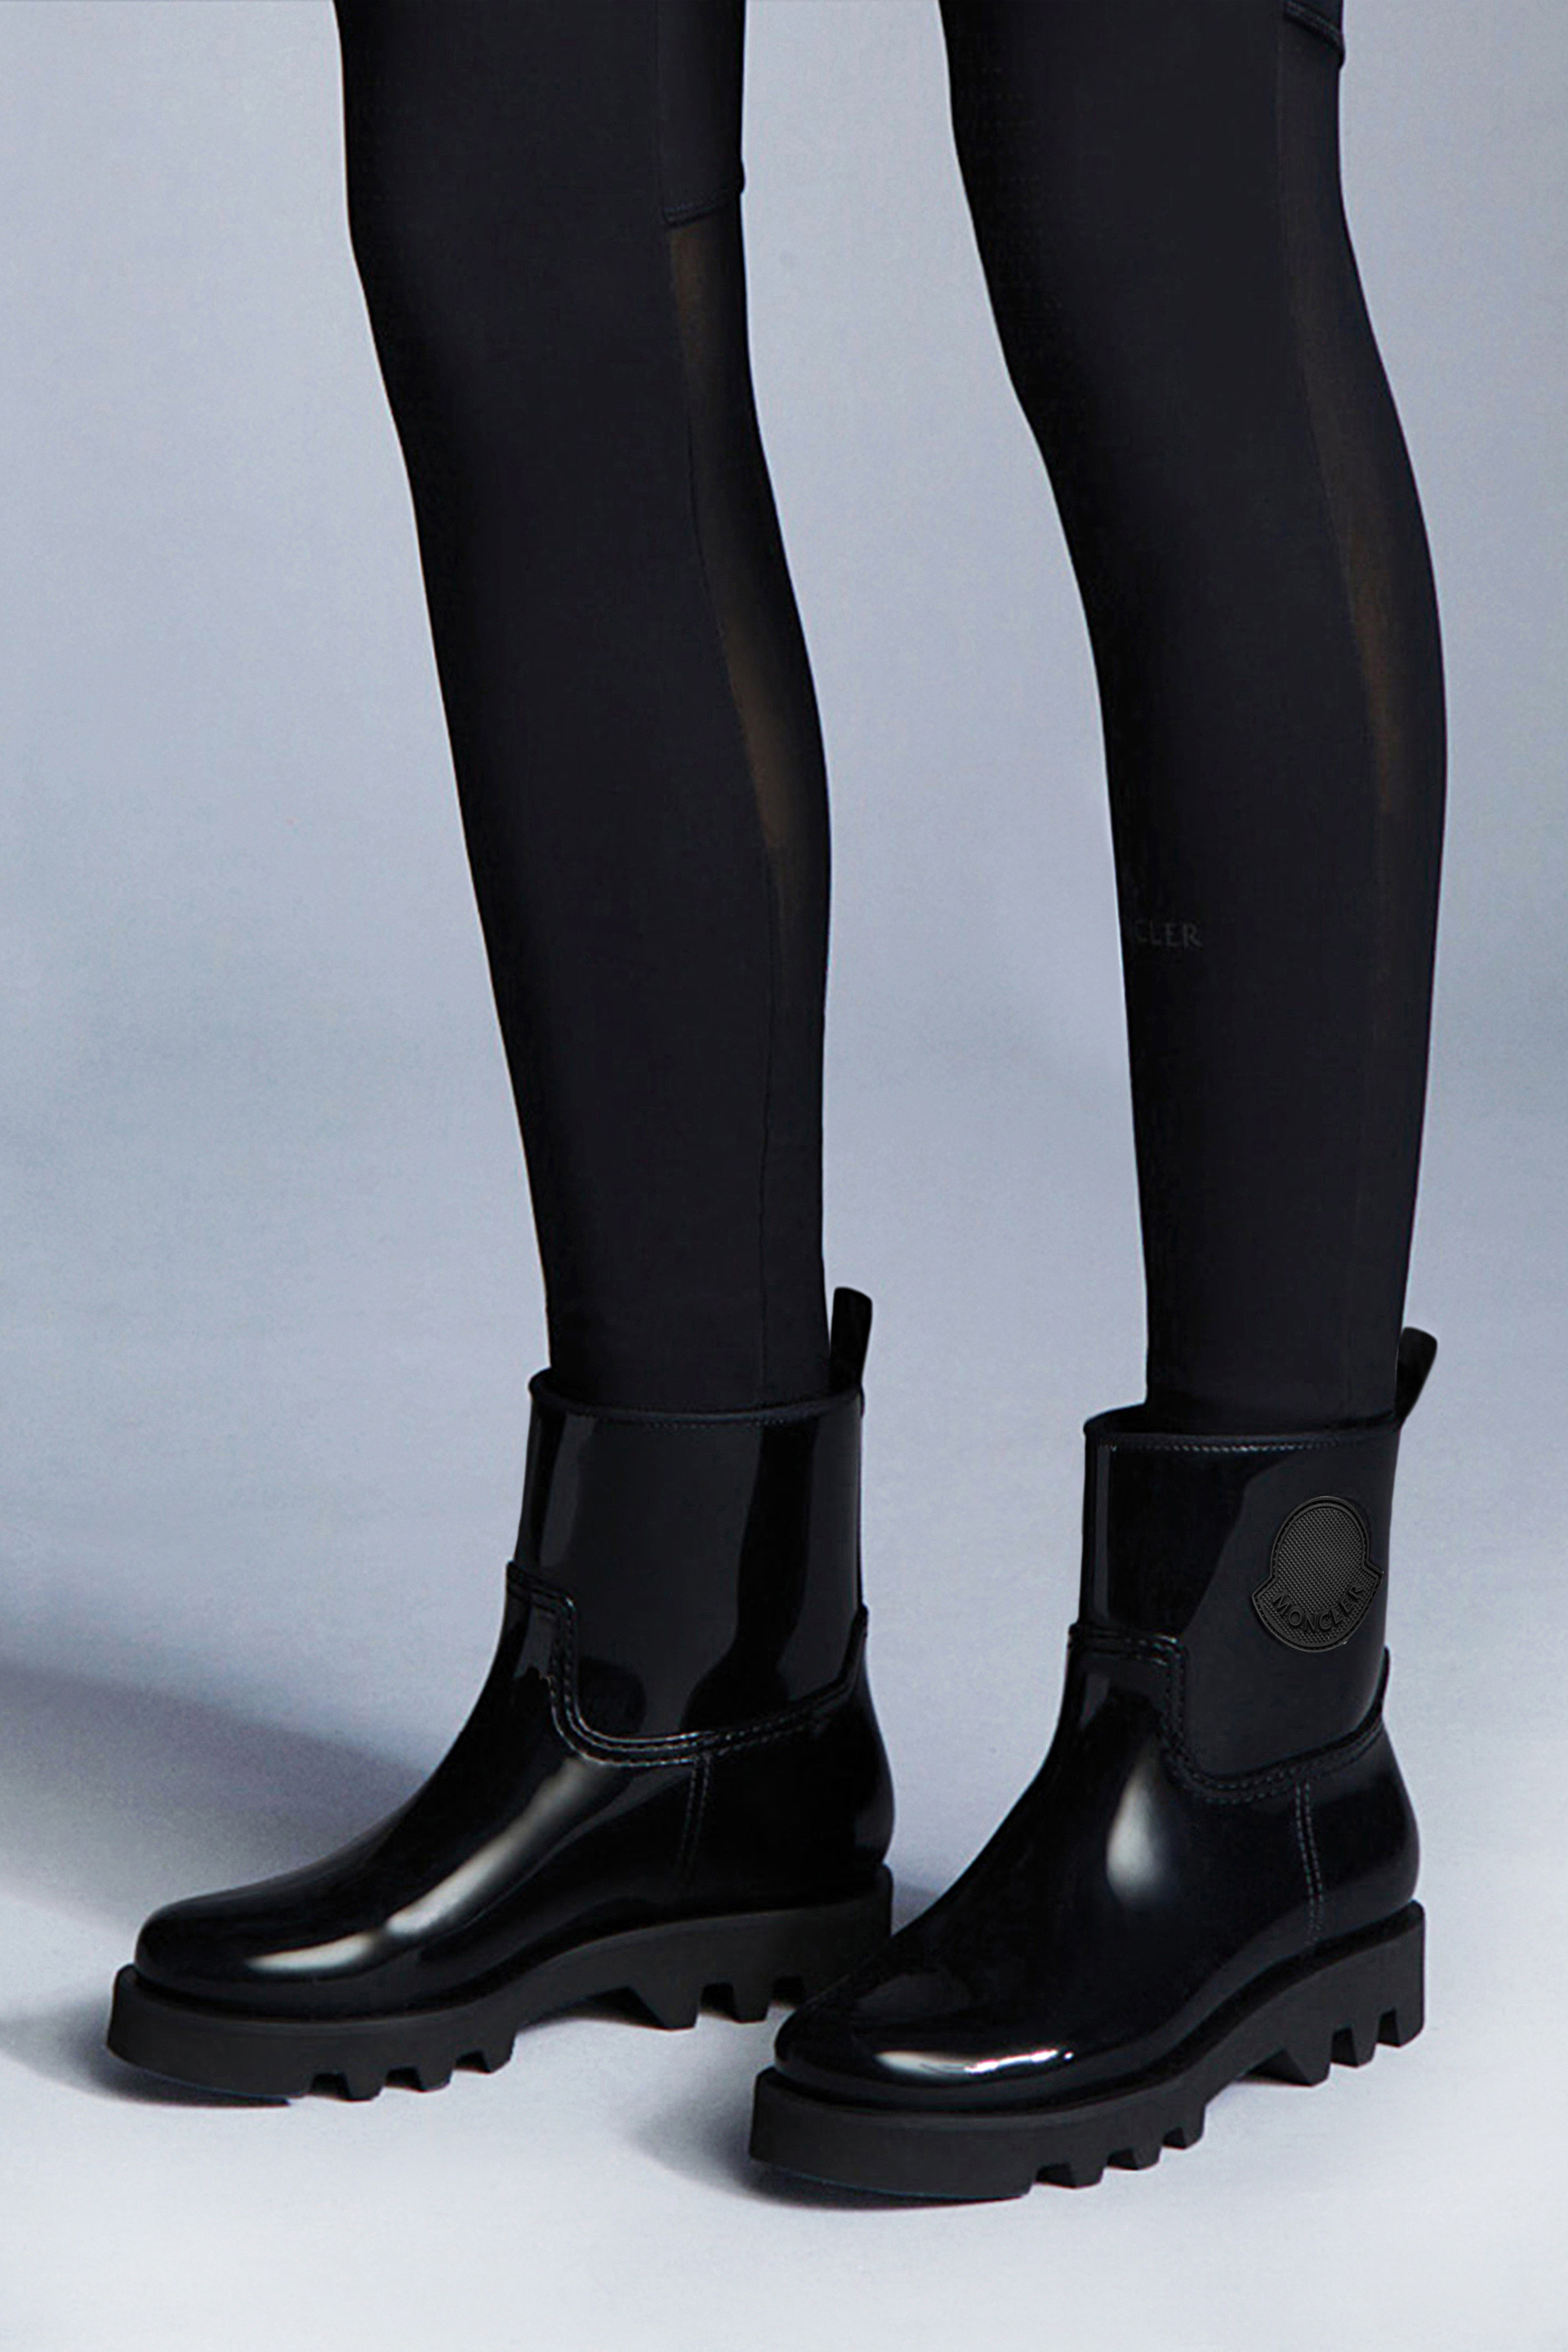 Bottes matelassées Ginette Synthétique Moncler en coloris Noir Femme Chaussures Bottes Bottes hauteur mi-mollet 